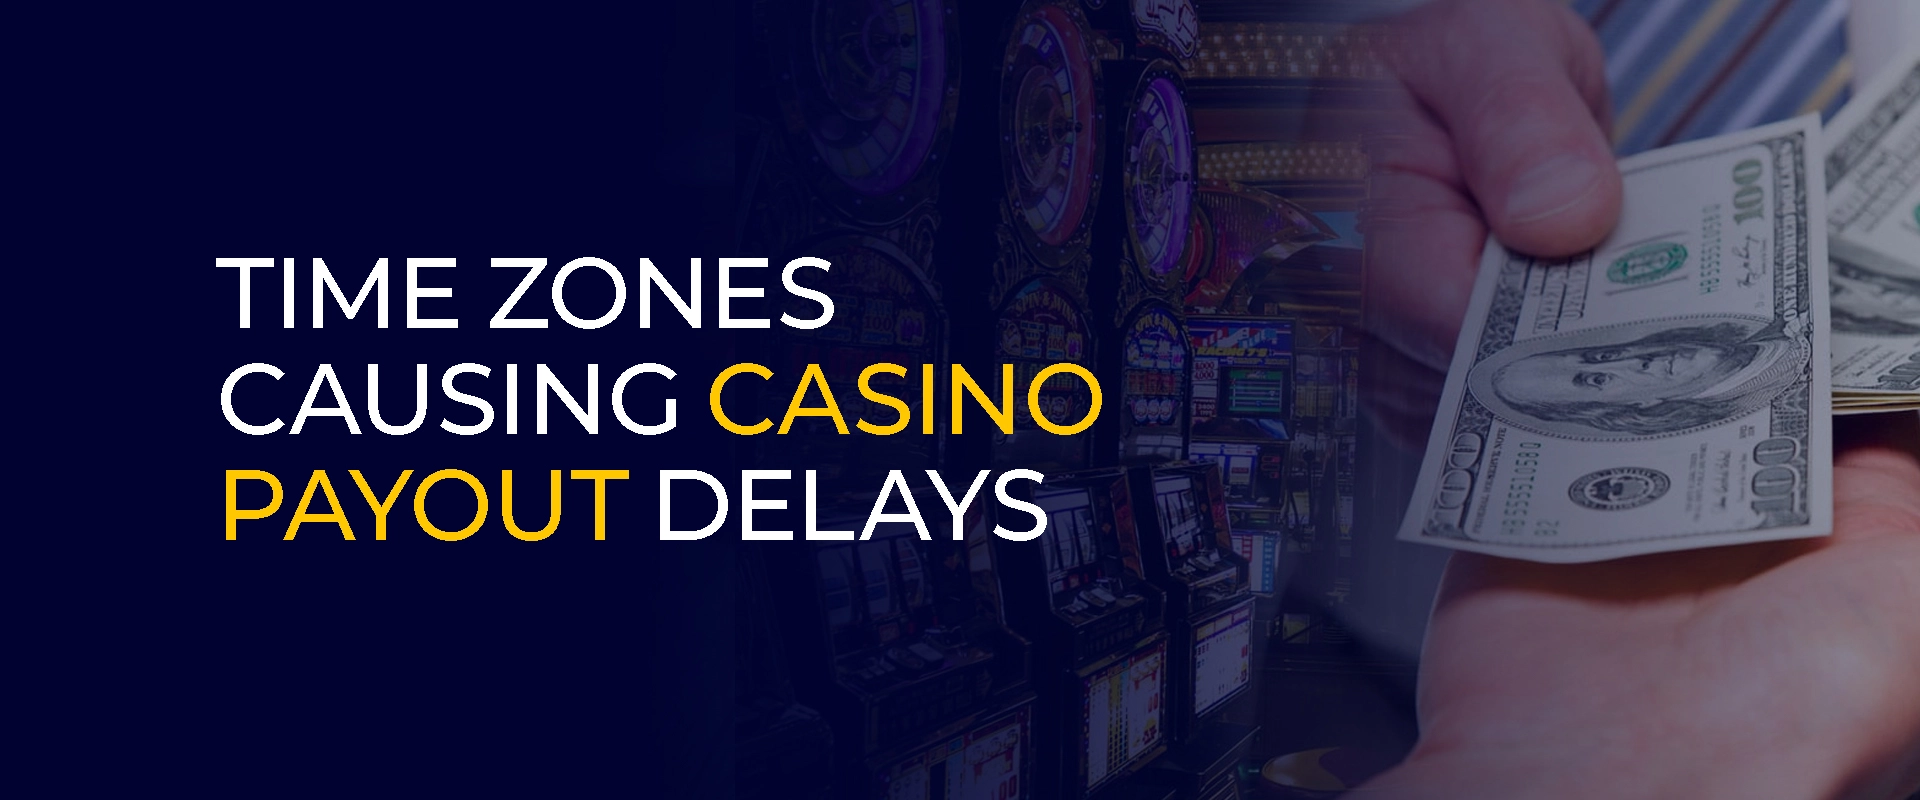 Zeitzonen verursachen Verzögerungen bei der Auszahlung im Casino